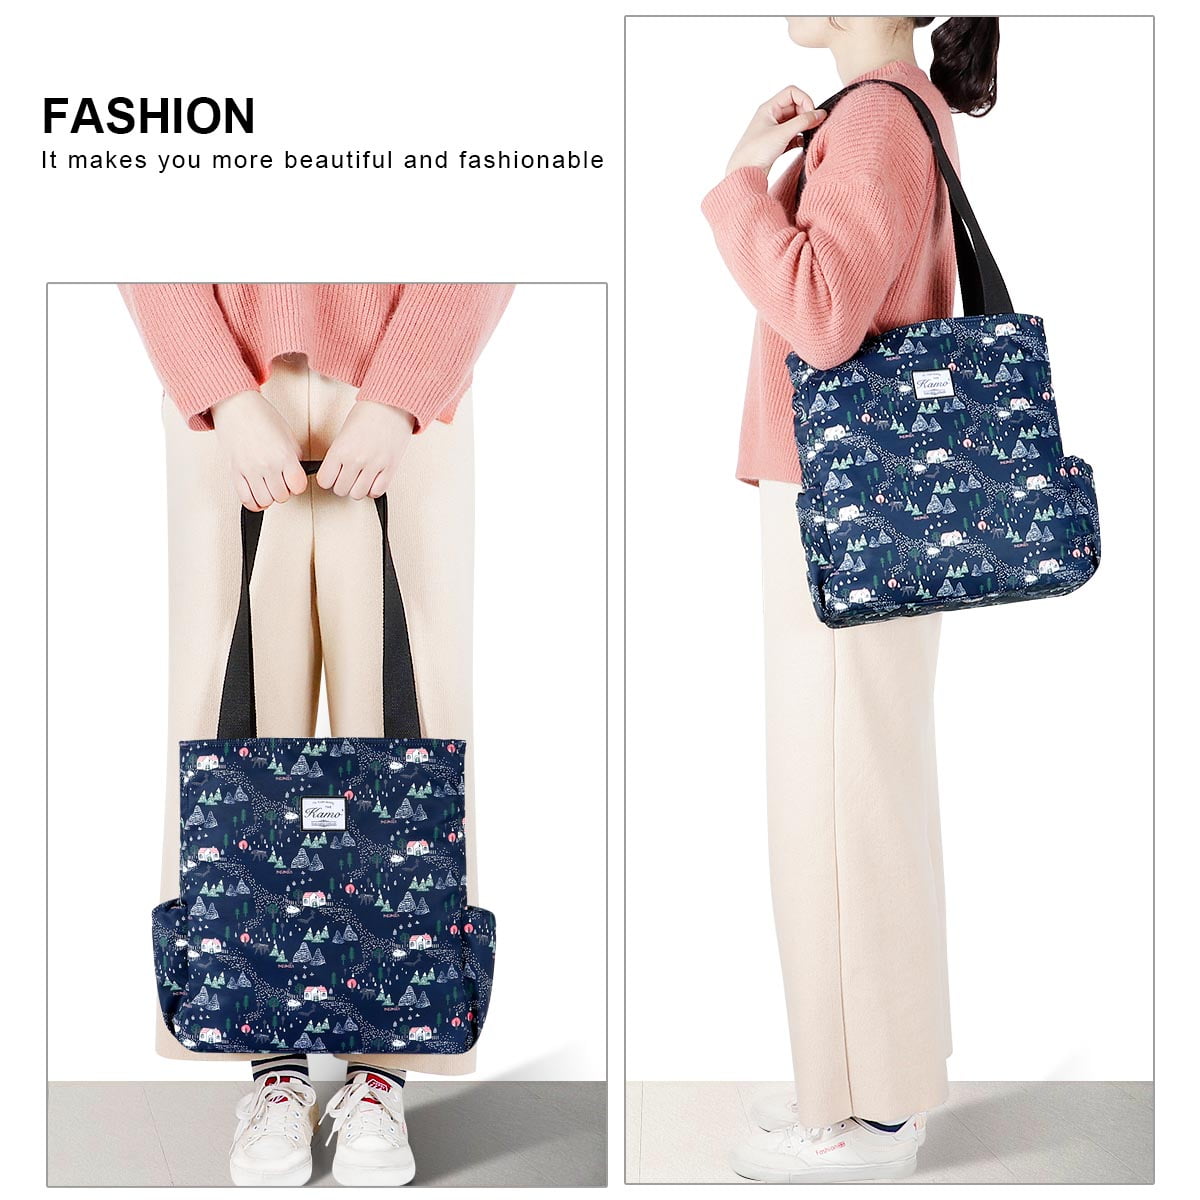 Floral Tote Bag - Waterproof Lightweight Handbags Travel Shoulder 